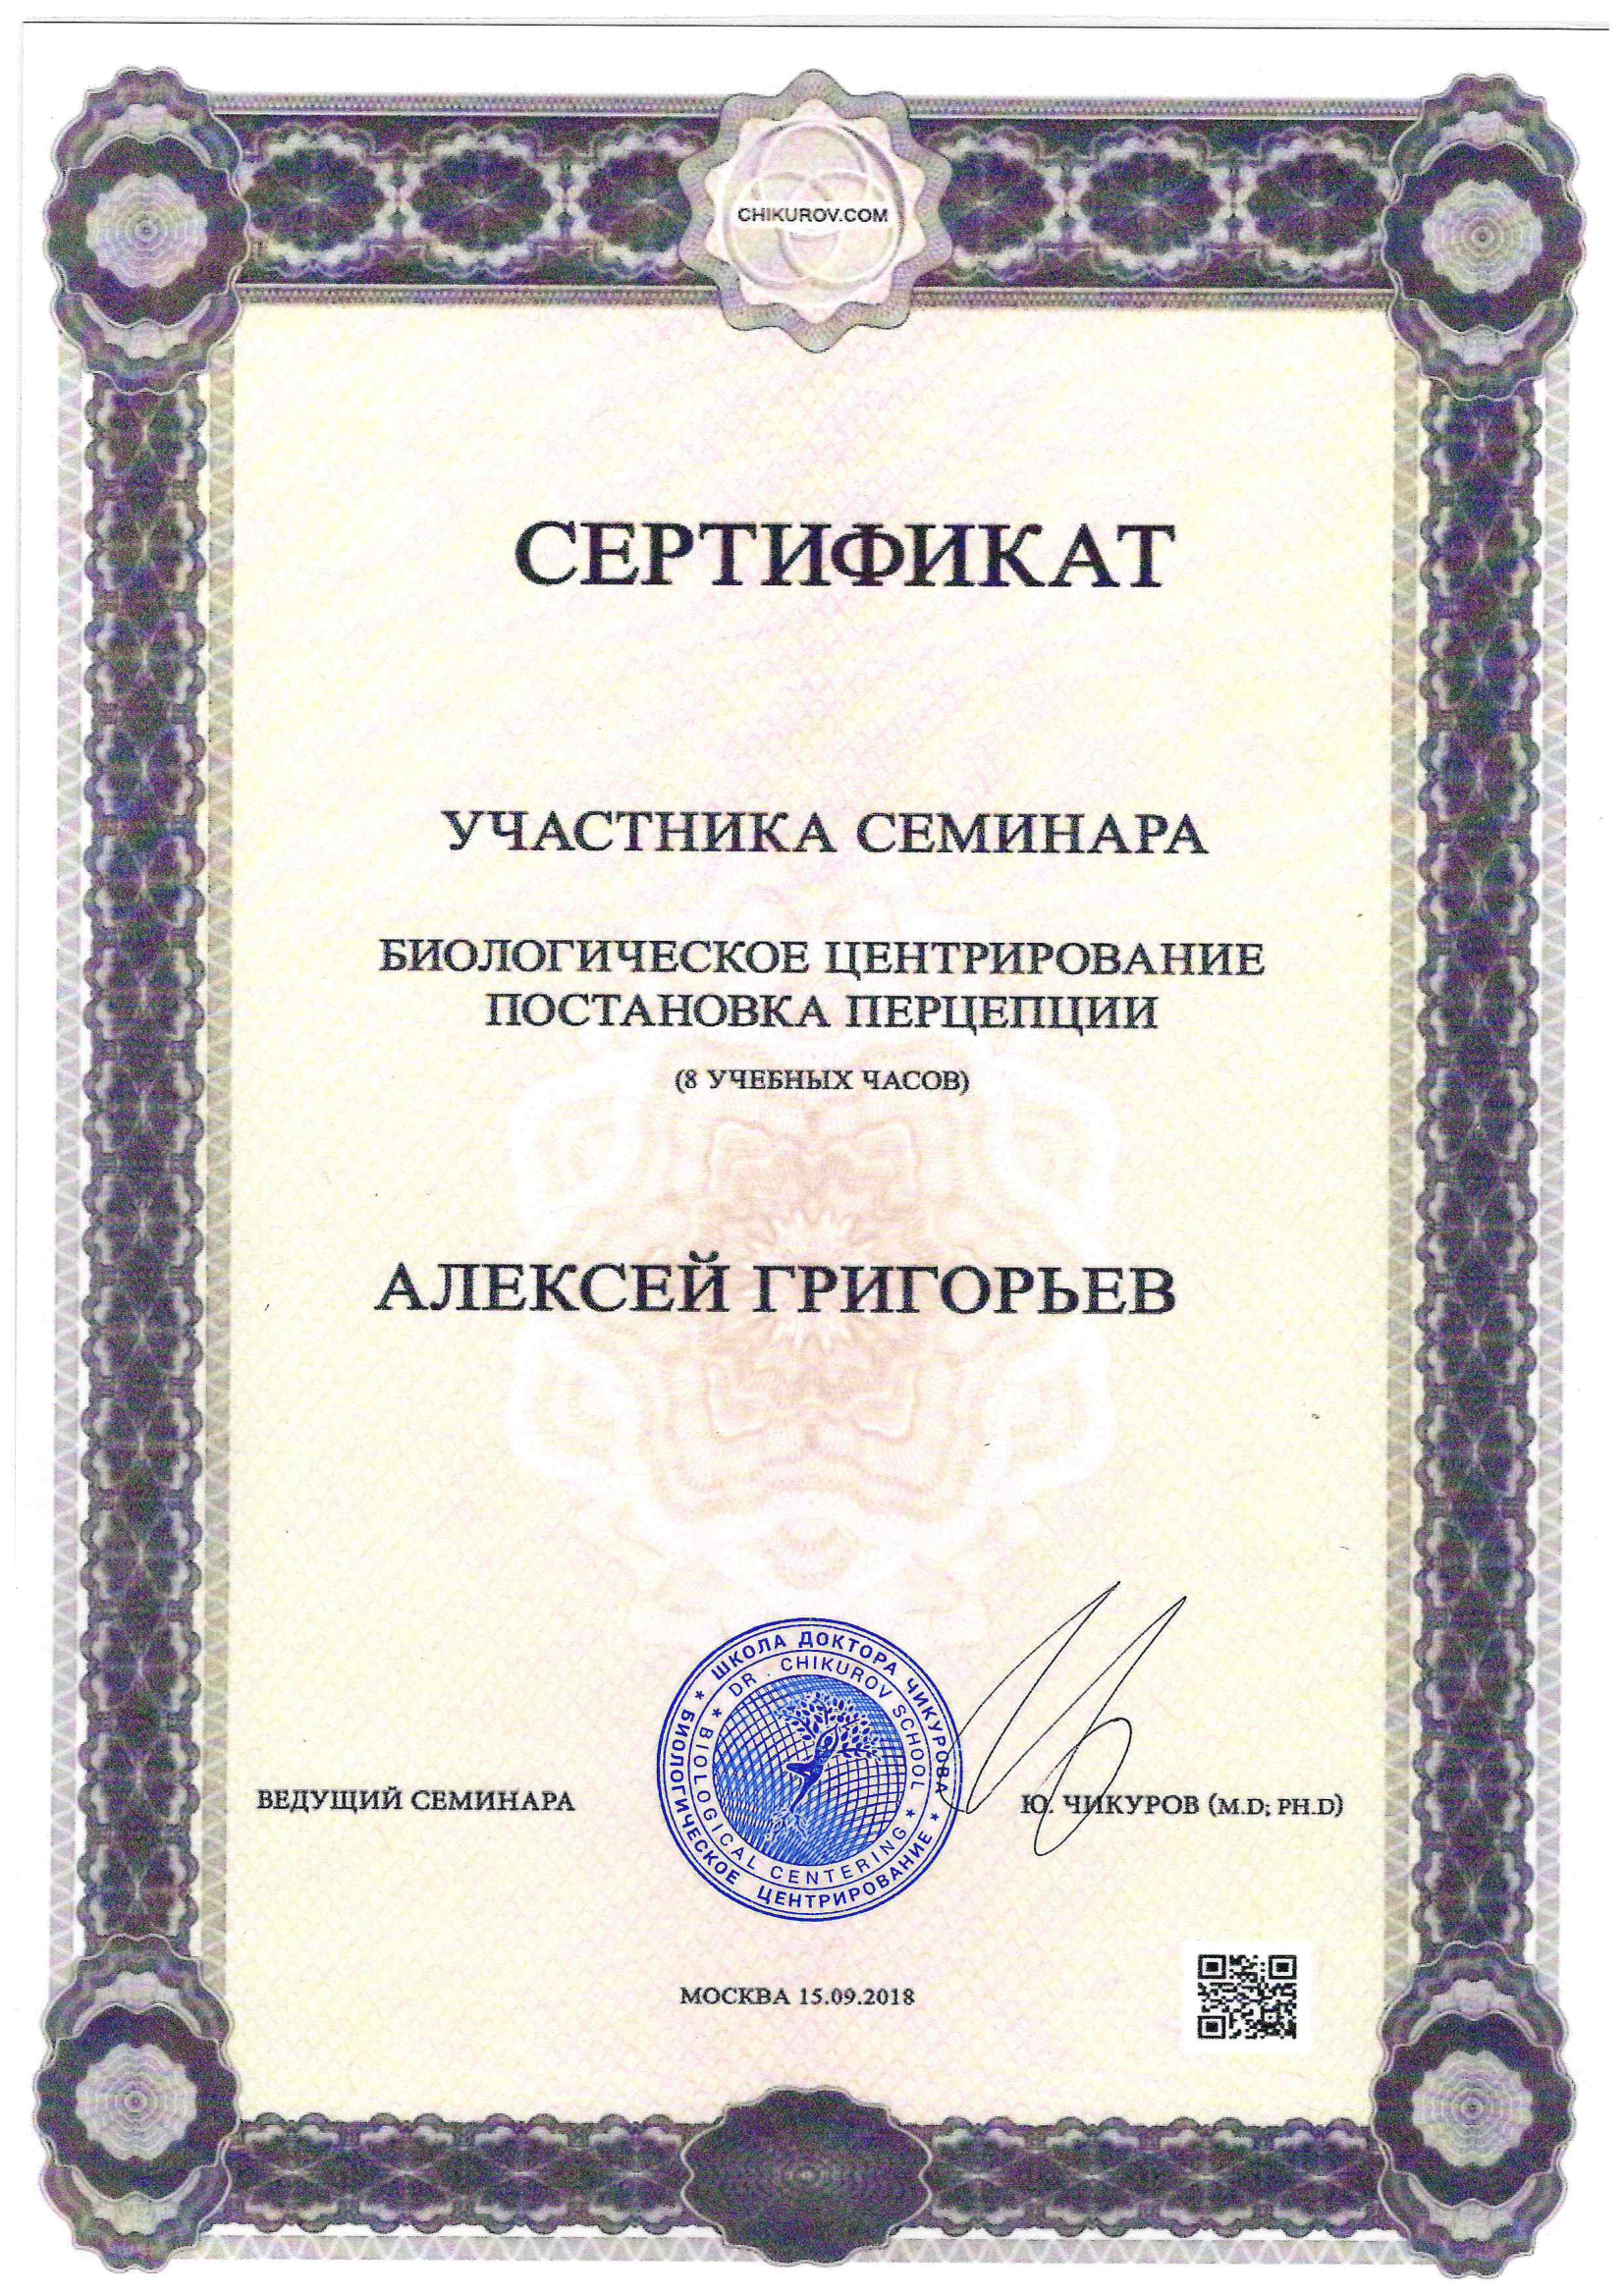 Григорьев Алексей Анатольевич